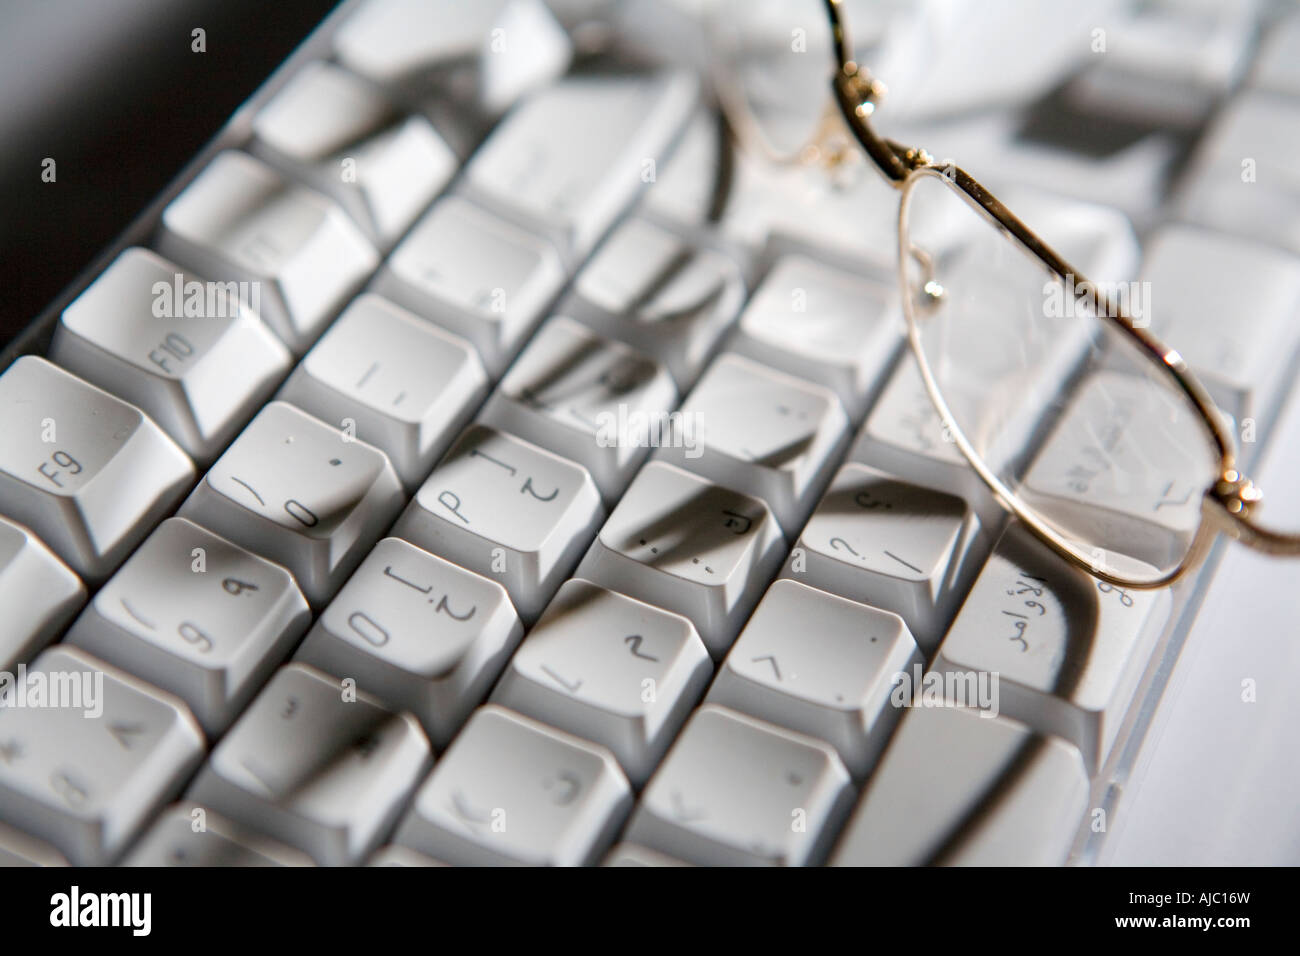 Arabische Tastatur Stockfotos und -bilder Kaufen - Alamy